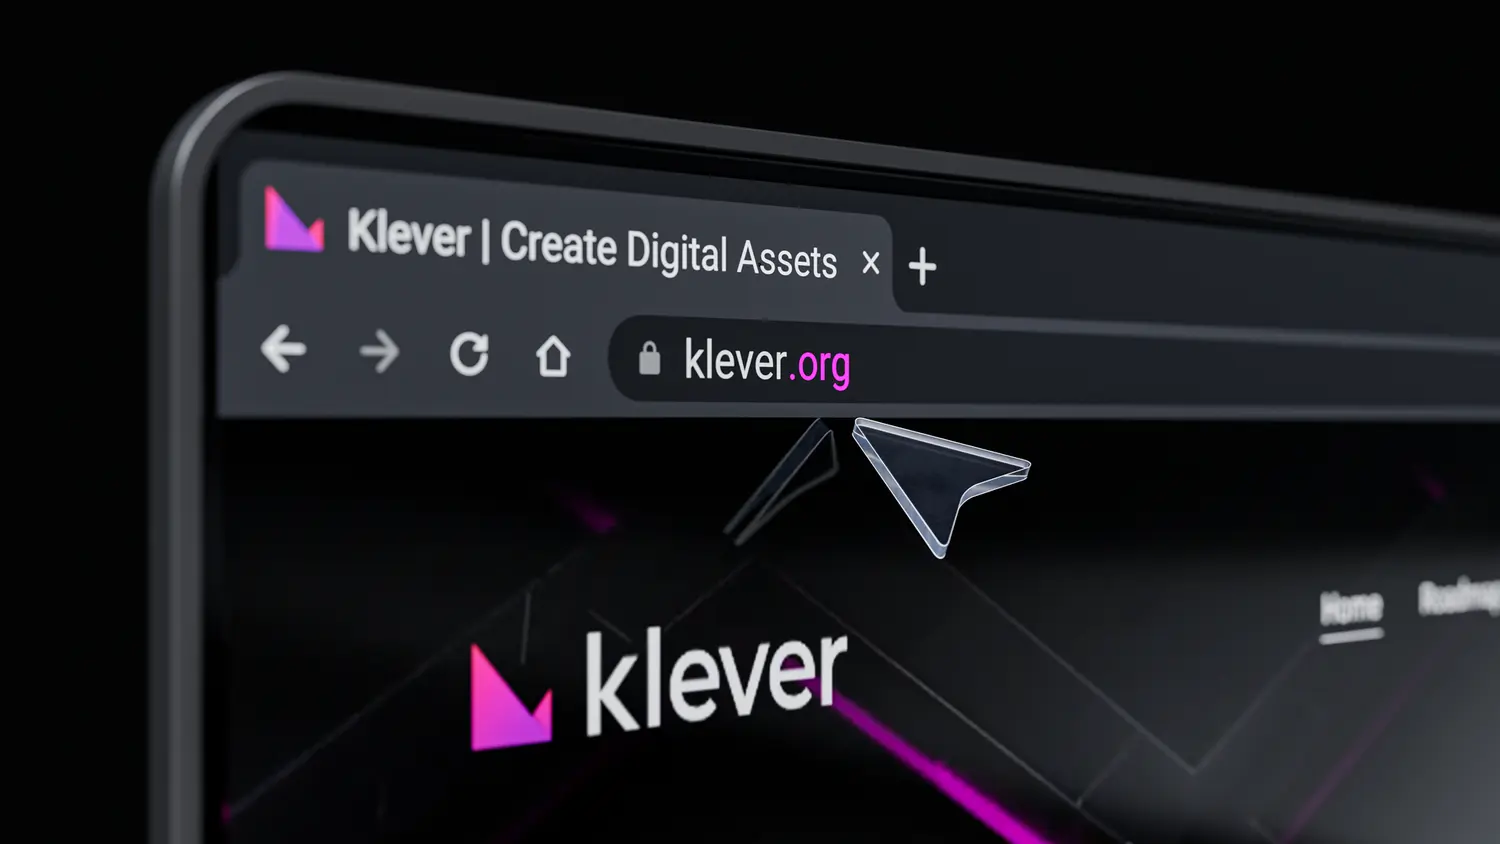 klever.org plataform